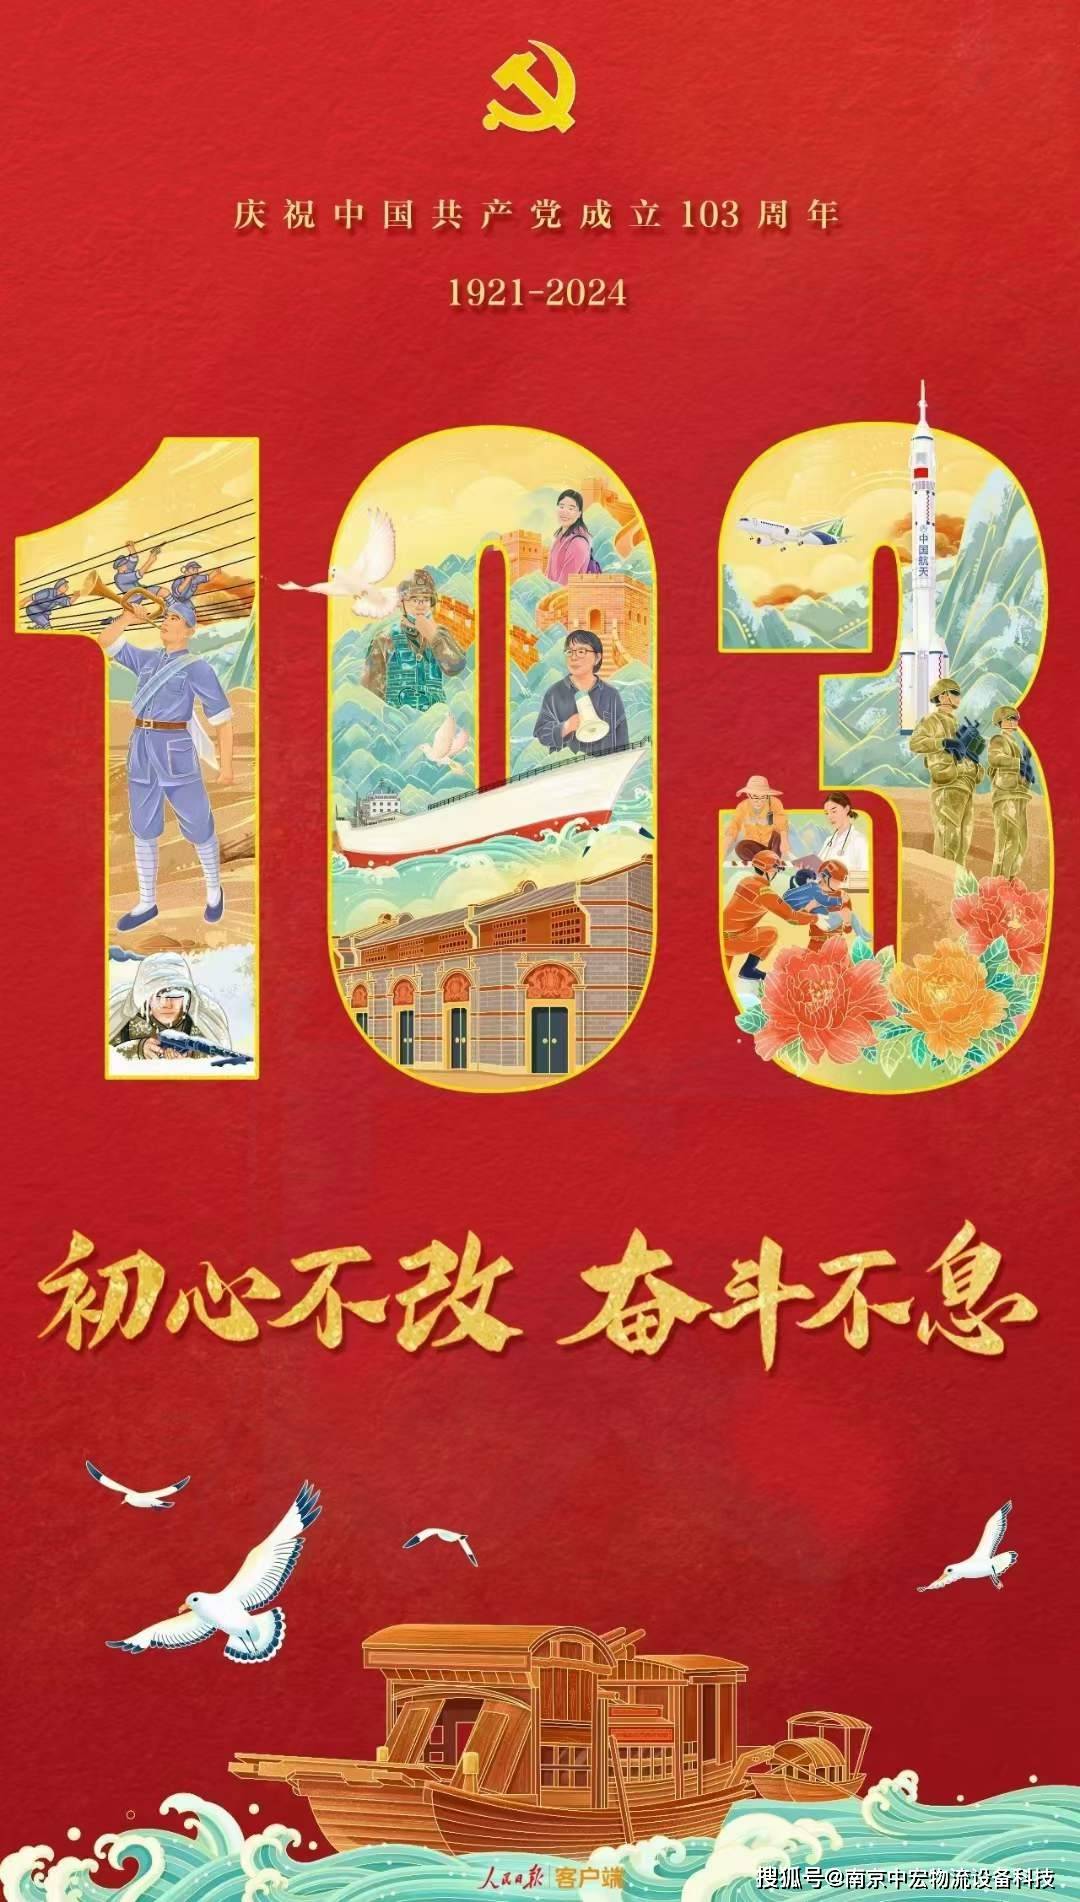 伟大、光荣，正确的中国共产党万岁！ 伟大、光荣、英雄的中国人